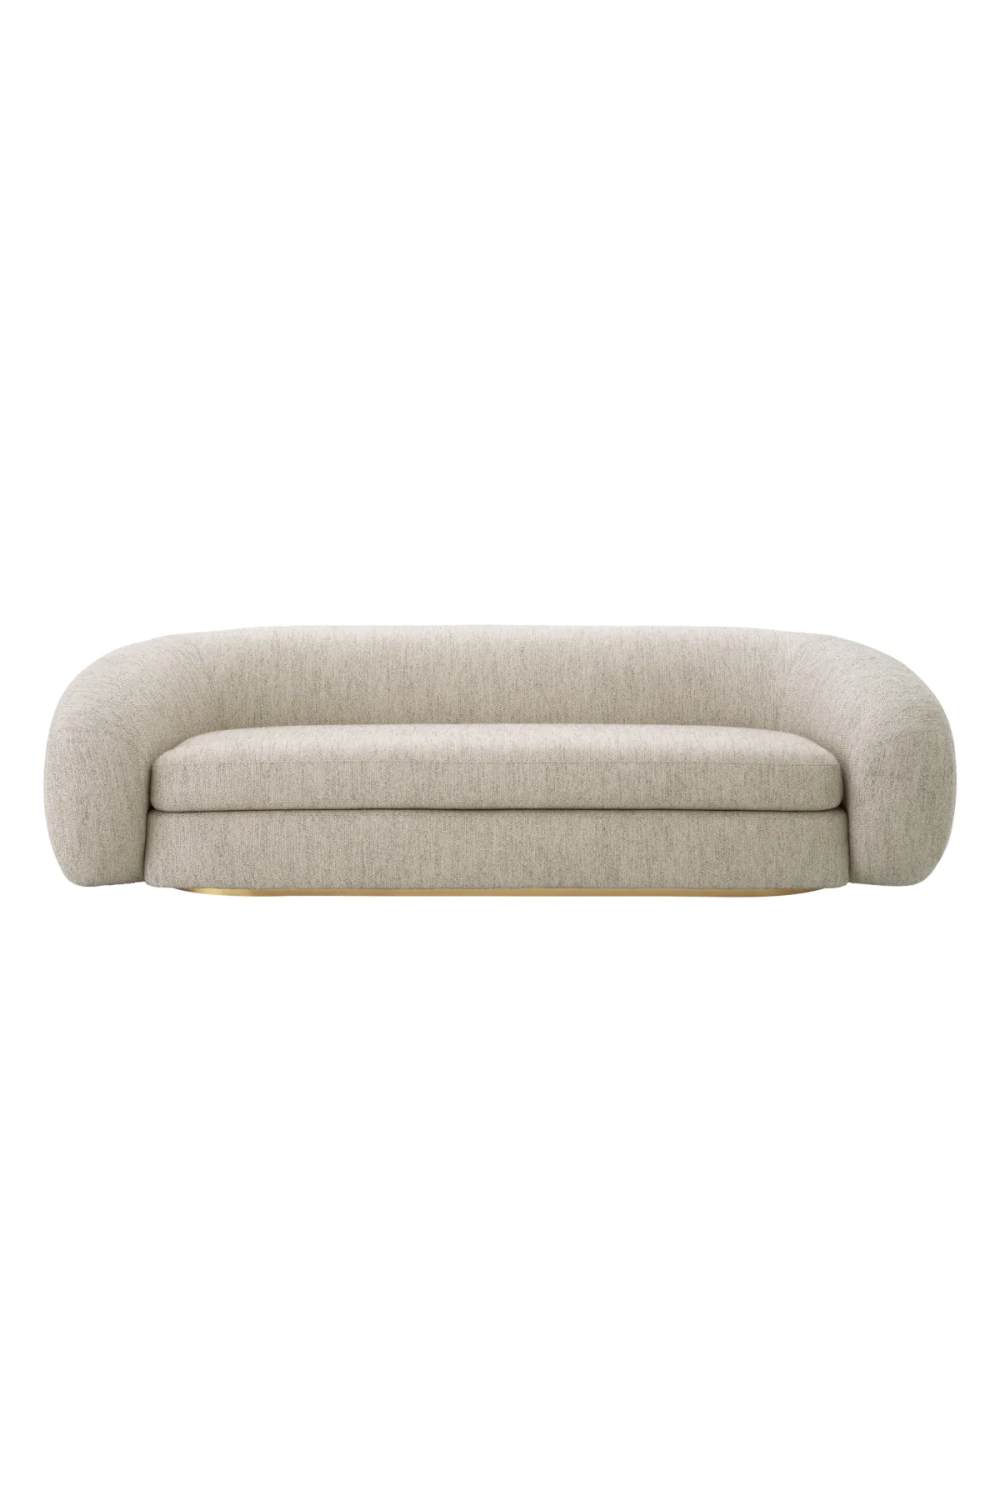 Light Gray Modern Sofa | Eichholtz Cesenza | Oroa.com